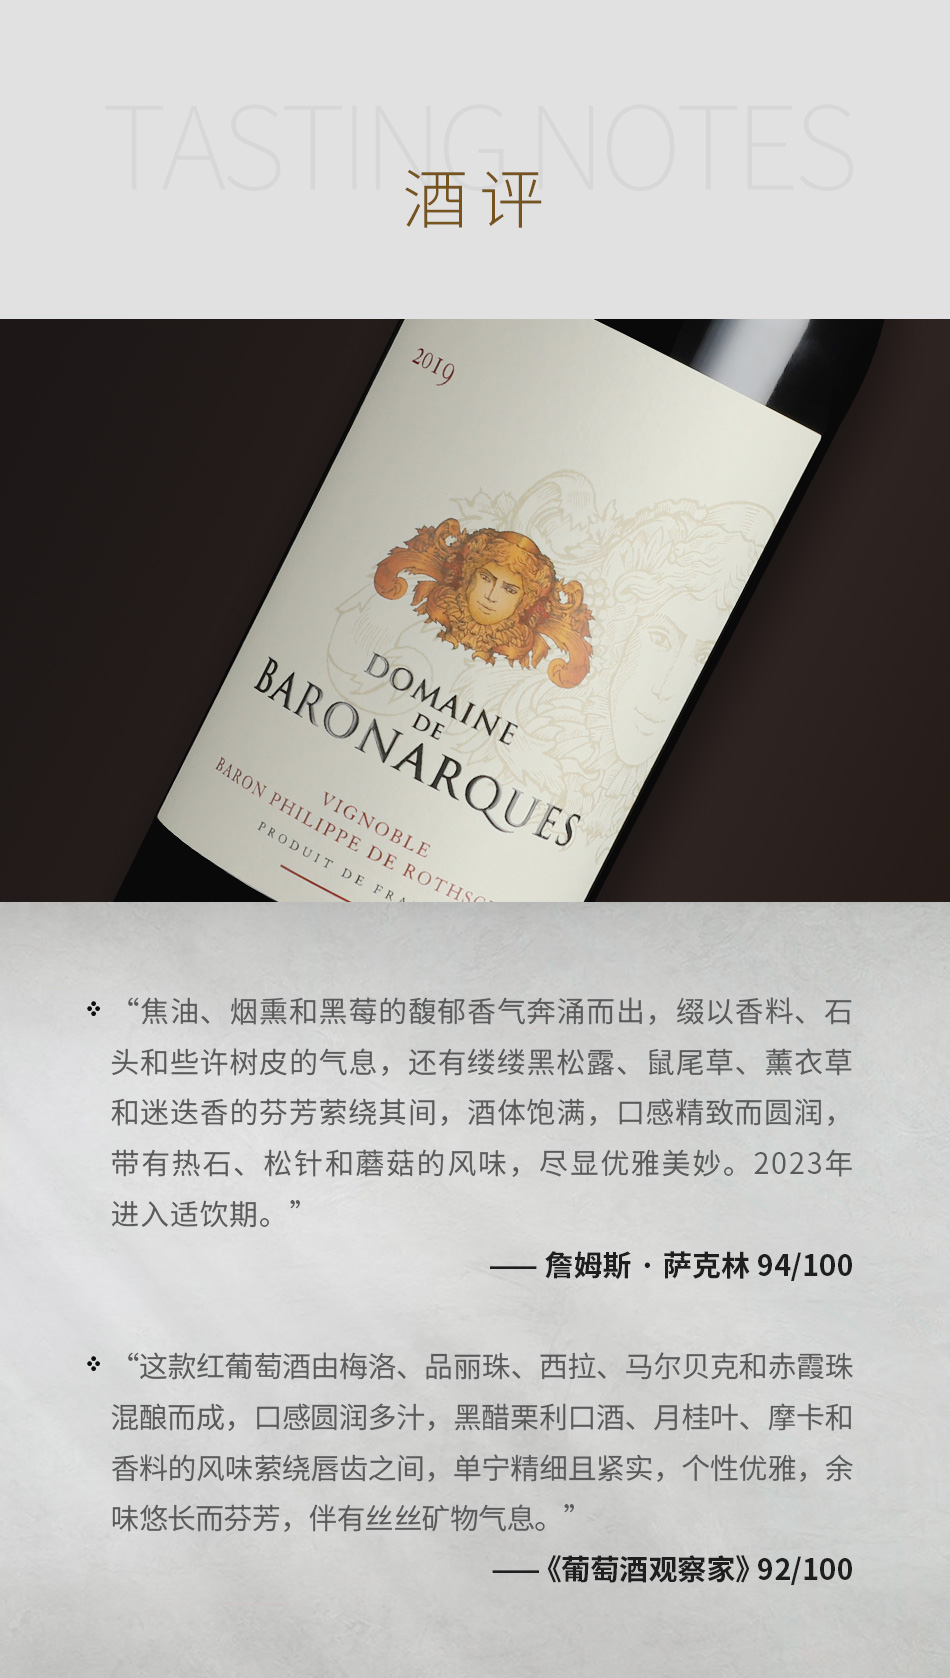 2019年拱男爵酒庄红葡萄酒